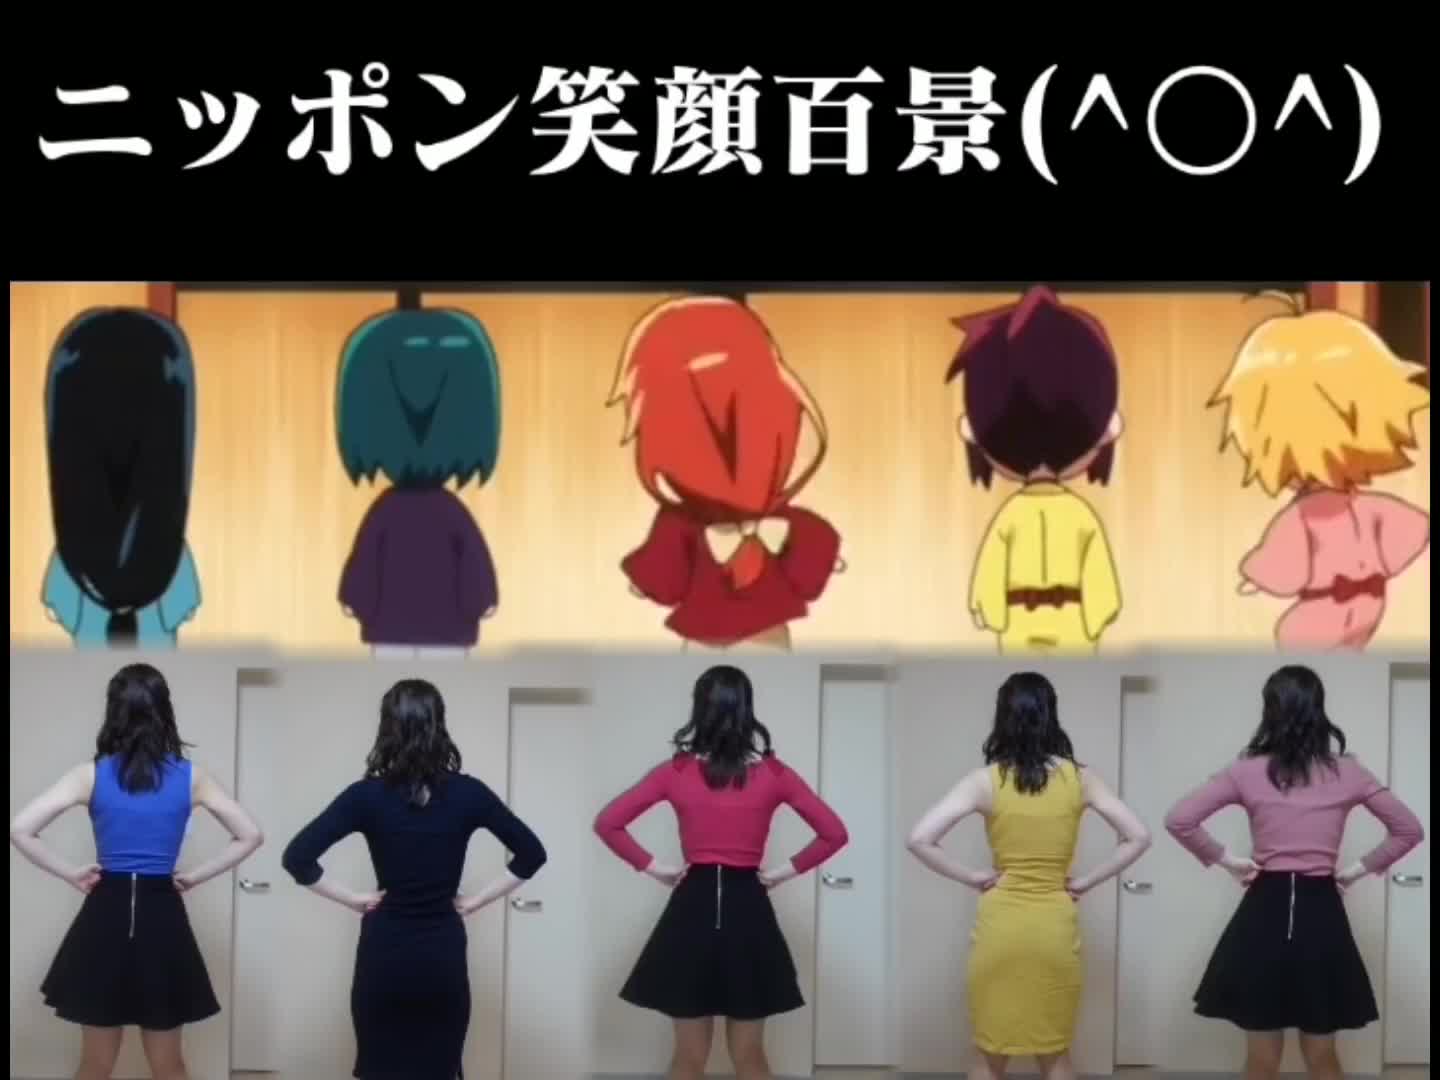 중독성 있는 일본 애니메이션 뮤직 비디오 커버